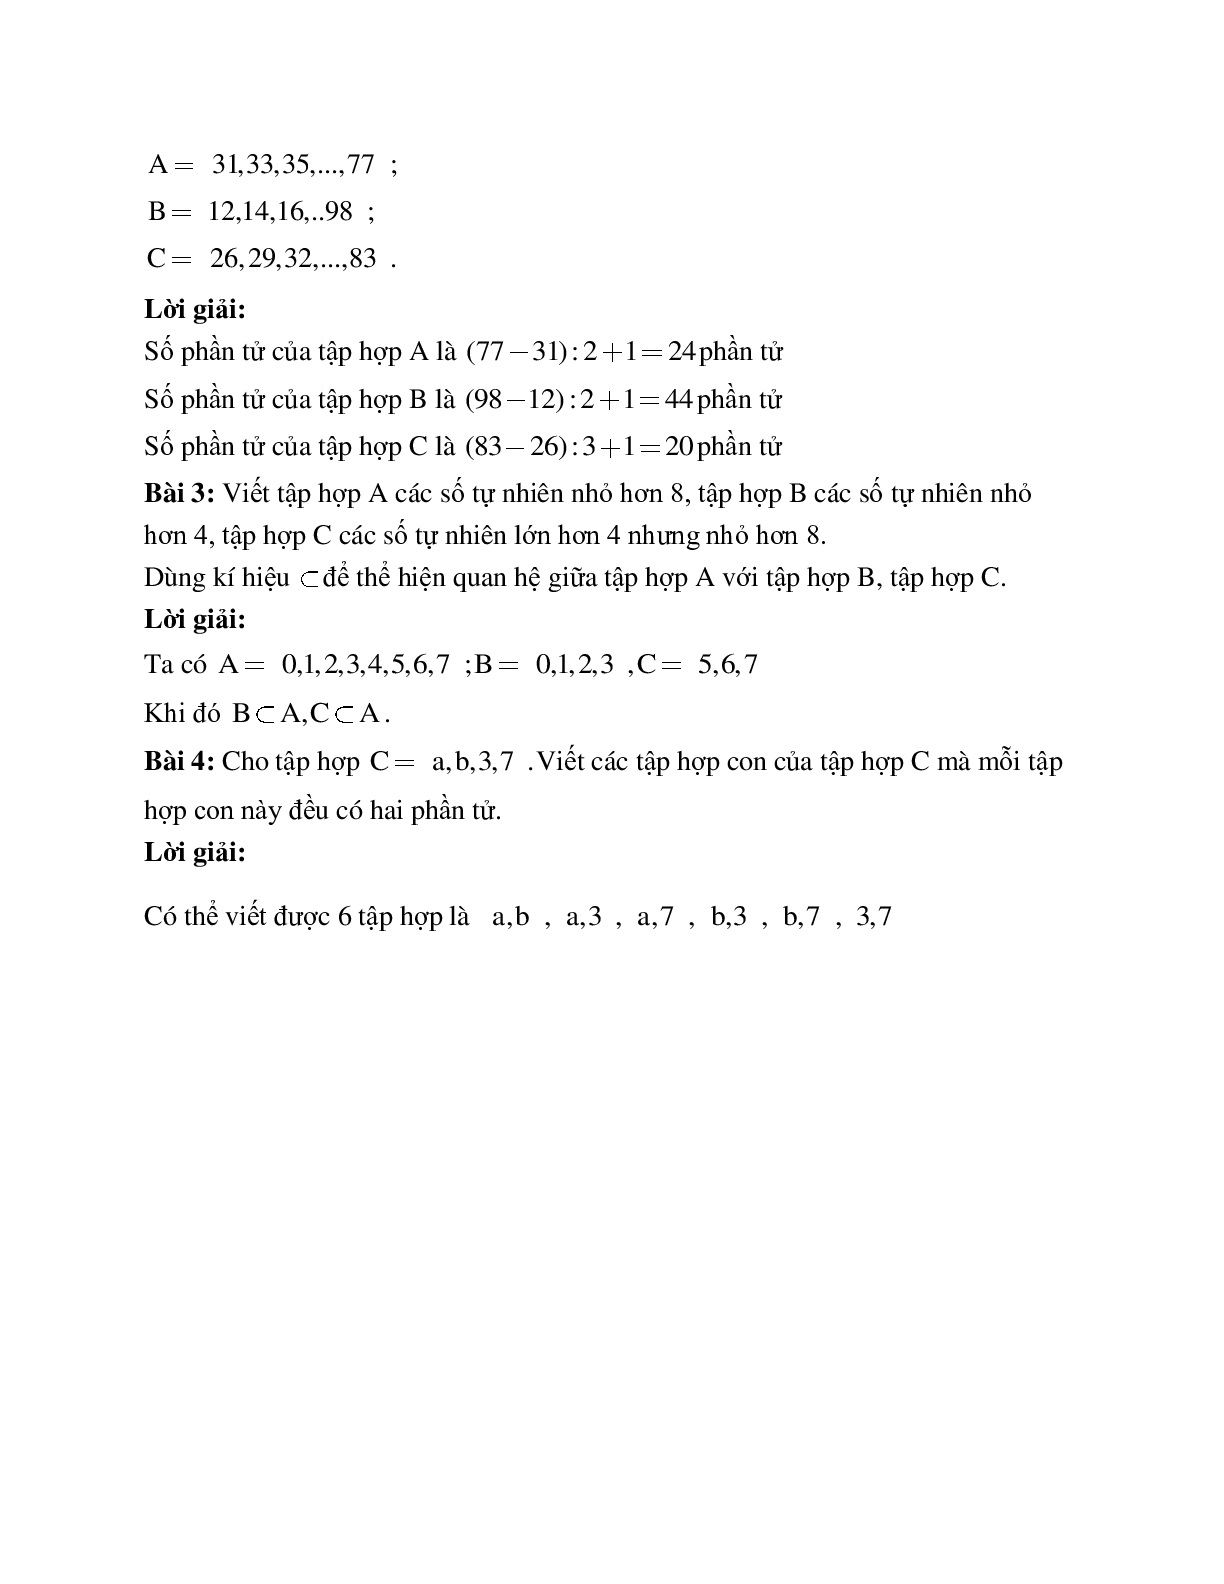 Hệ thống bài tập về Số phần tử của một tập hợp - Tập hợp con có lời giải (trang 5)